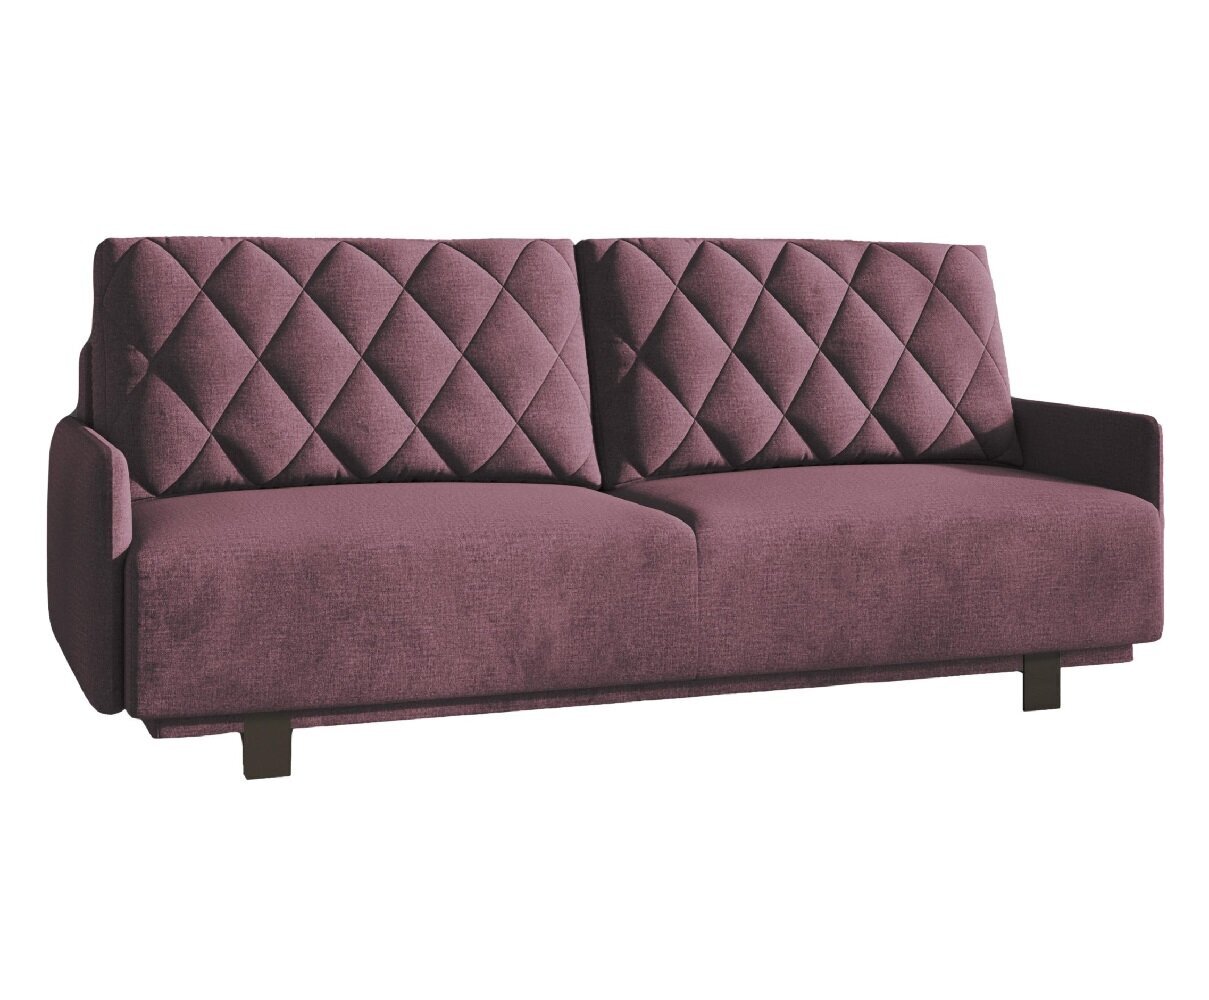 Trivietė sofa - lova Kari, bordo kaina | pigu.lt